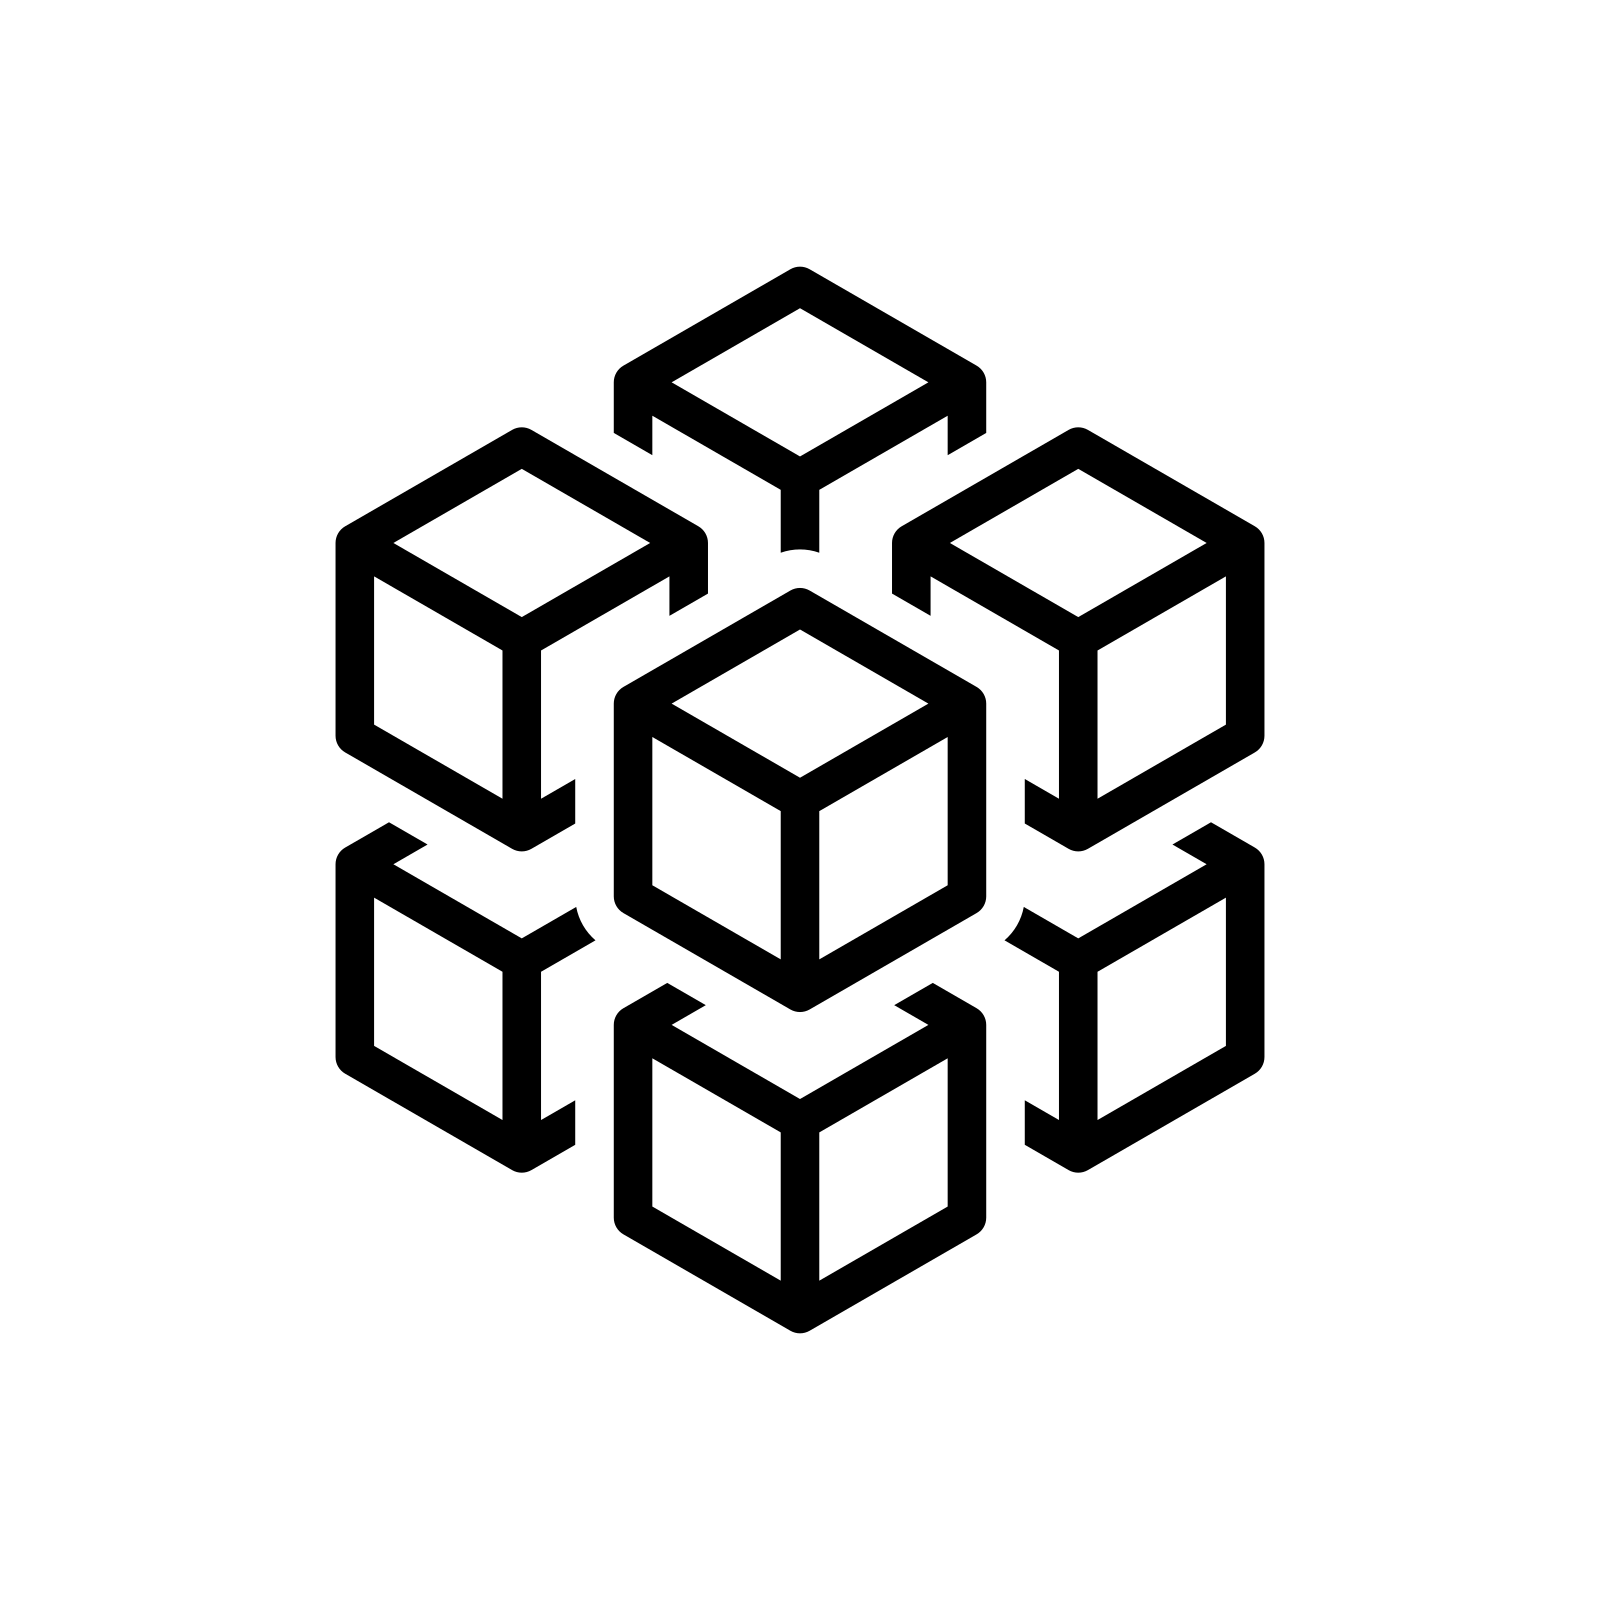 Modular blocks